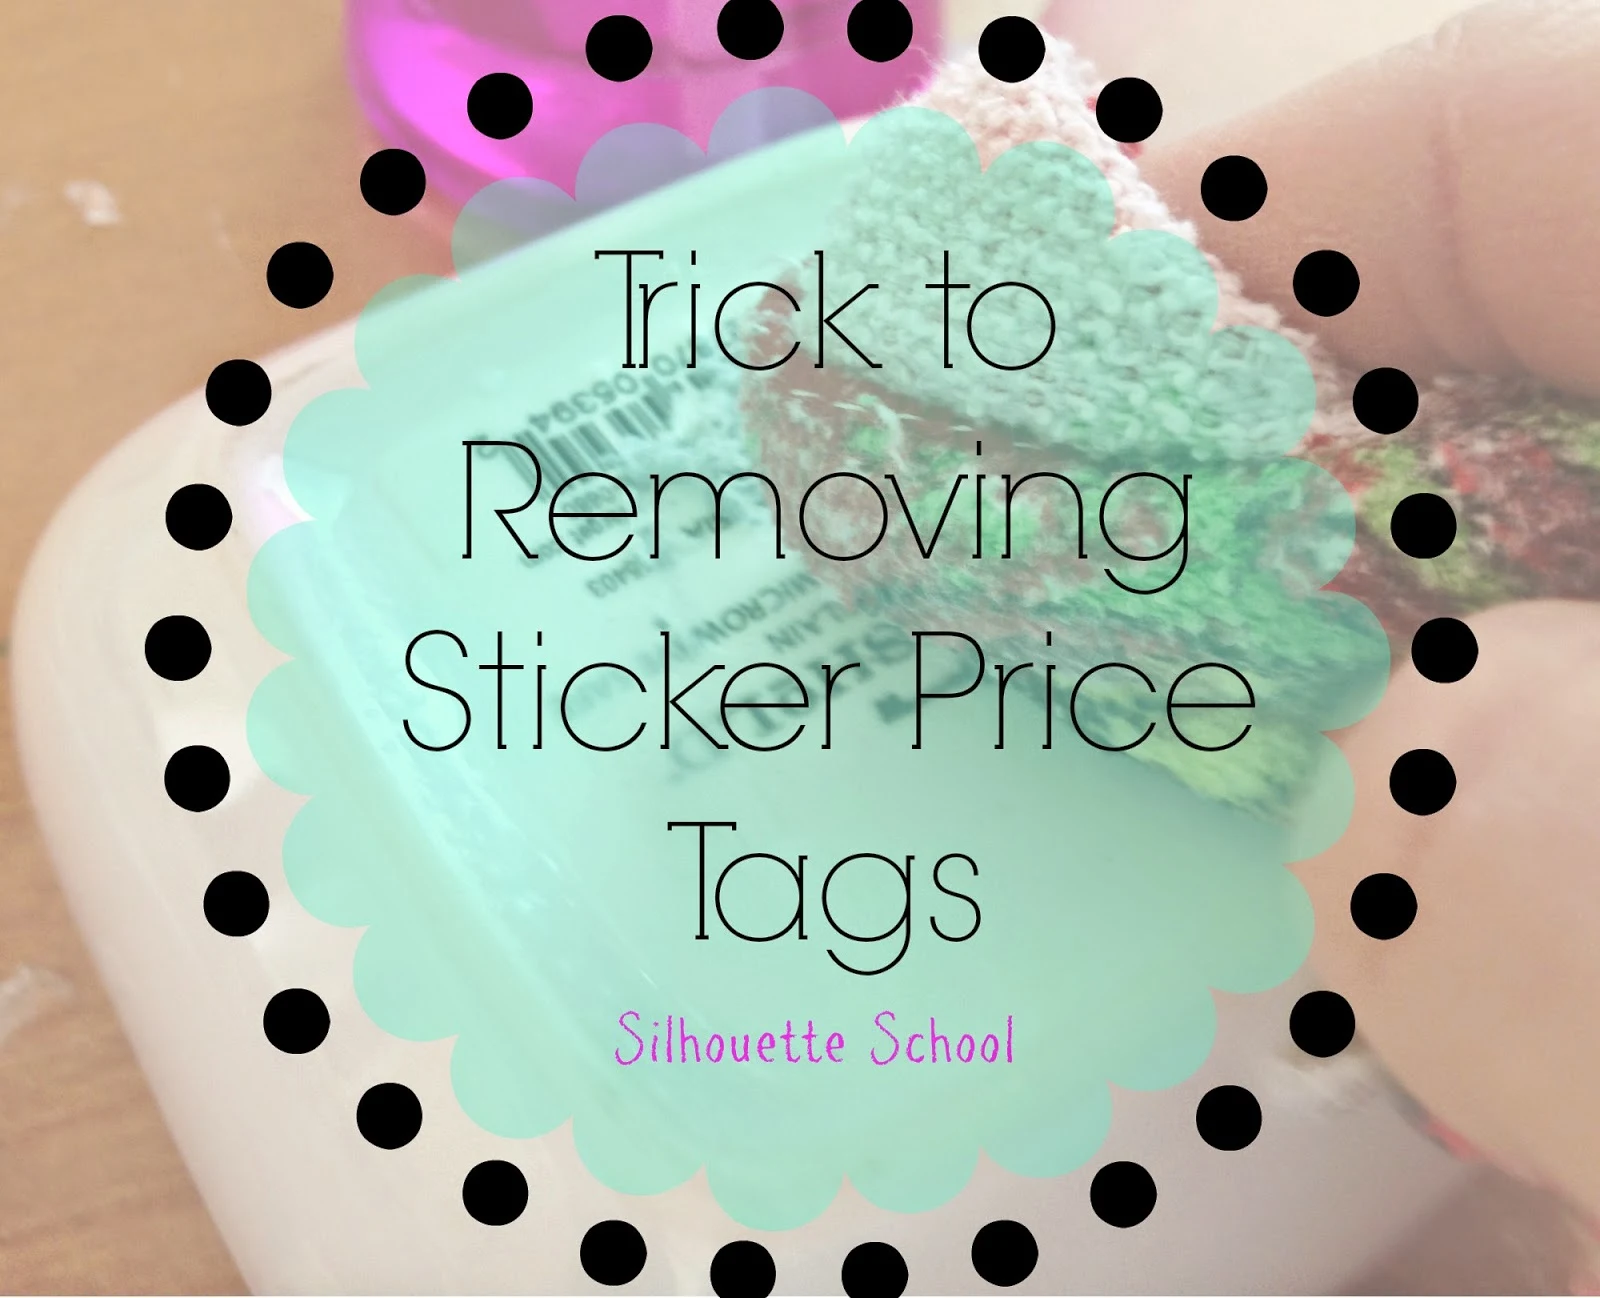 Sticker price tag, removing price tag